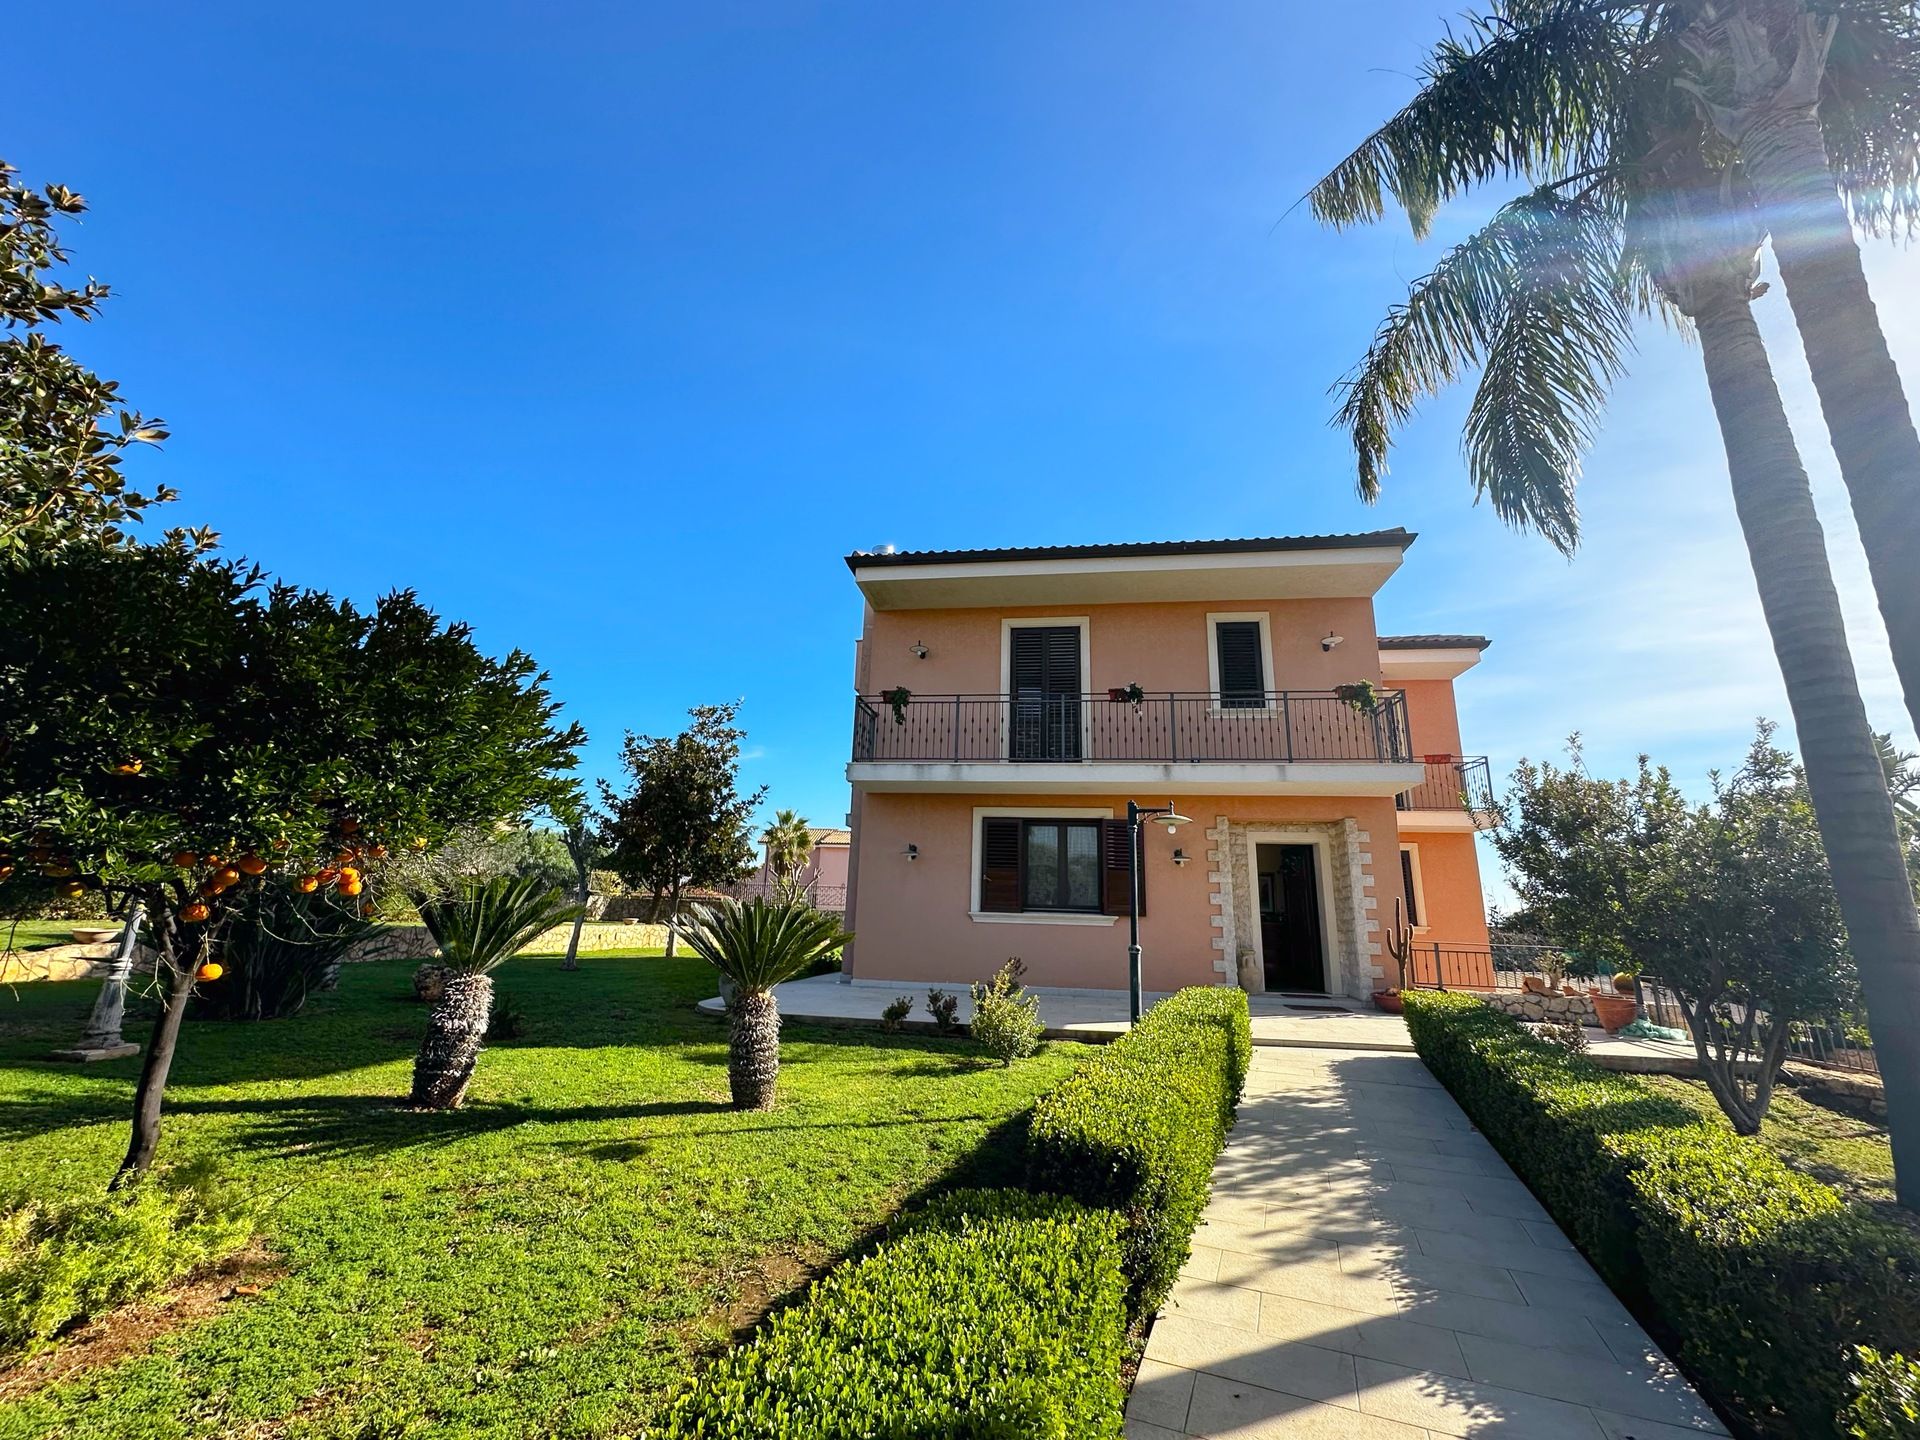 Vendita villa in zona tranquilla Siracusa Sicilia